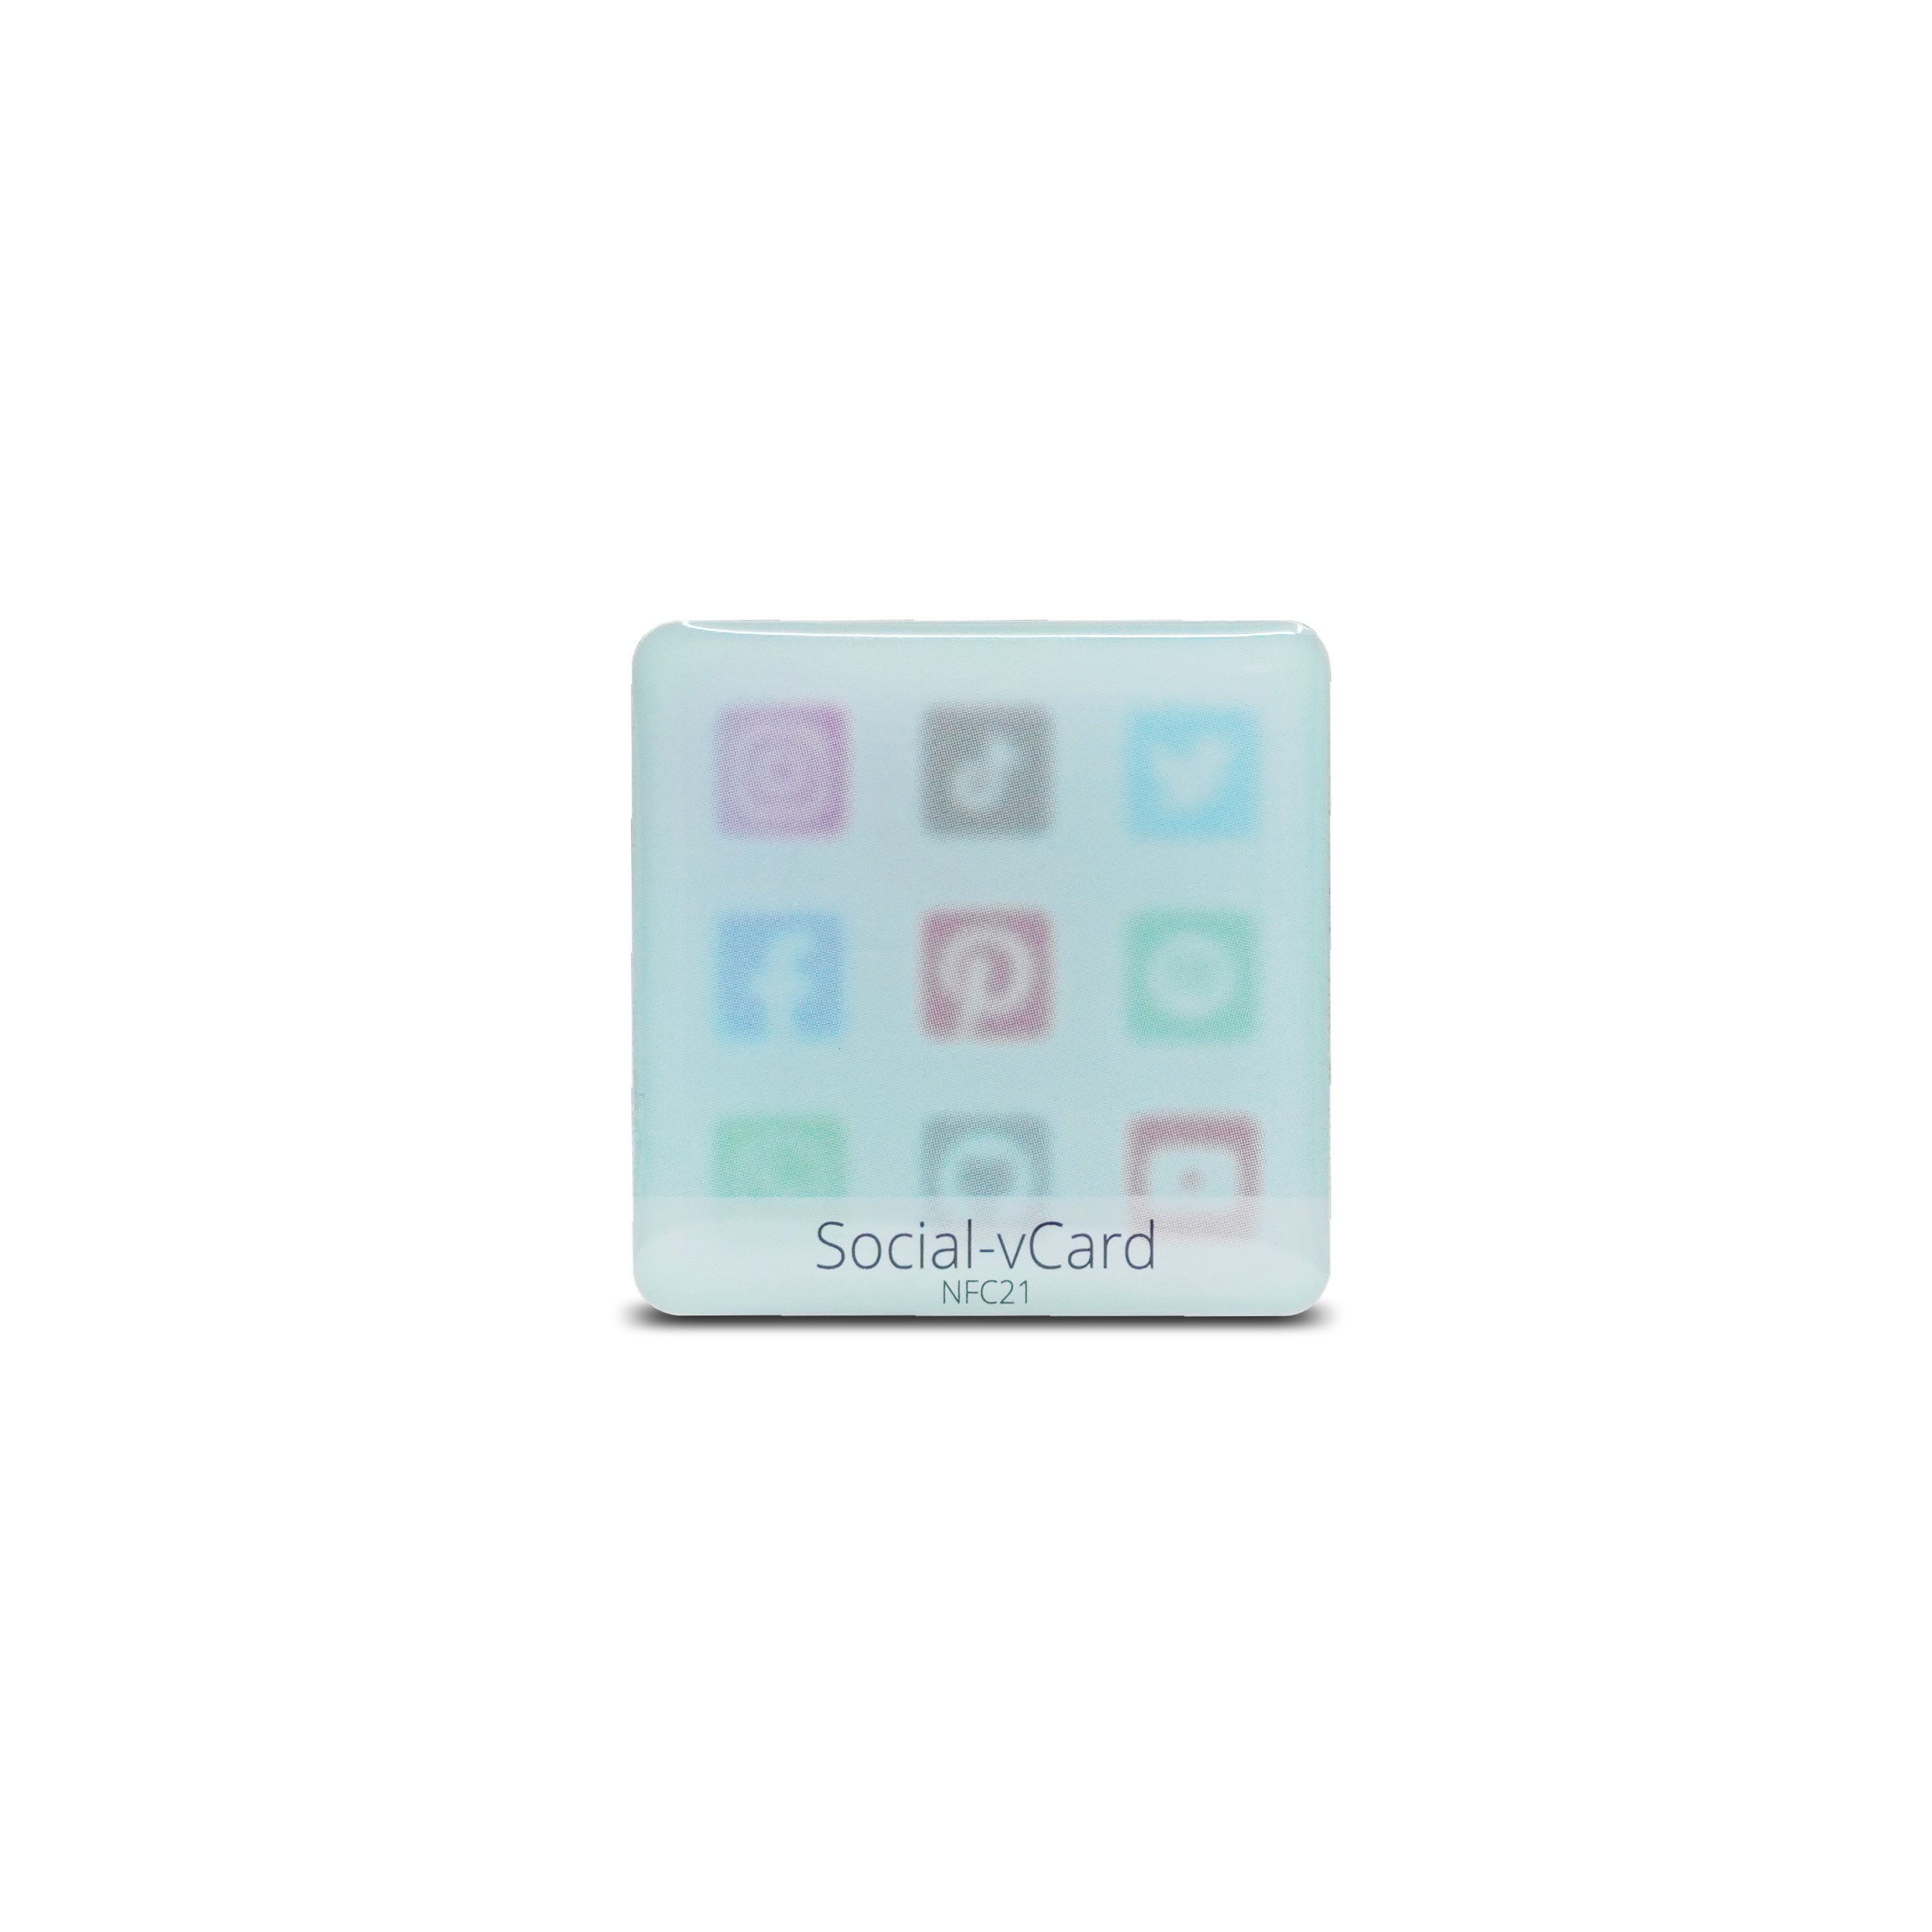 Social-vCard Light - Digital social media sticker - PET - 35 x 35 mm - light blue